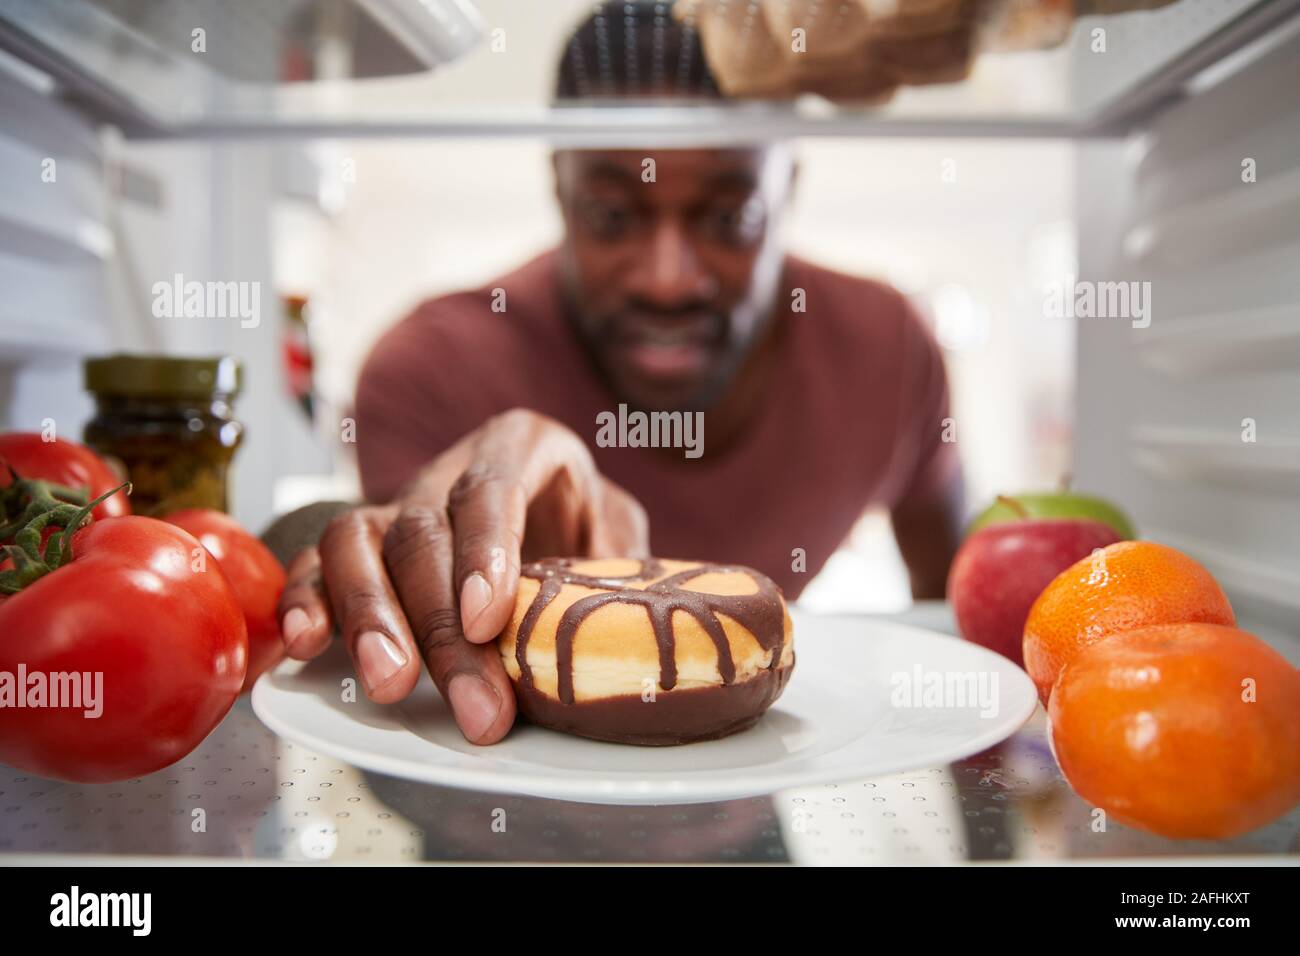 À la vue de l'intérieur du réfrigérateur que l'homme ouvre la porte et atteint pour Donut malsain Banque D'Images